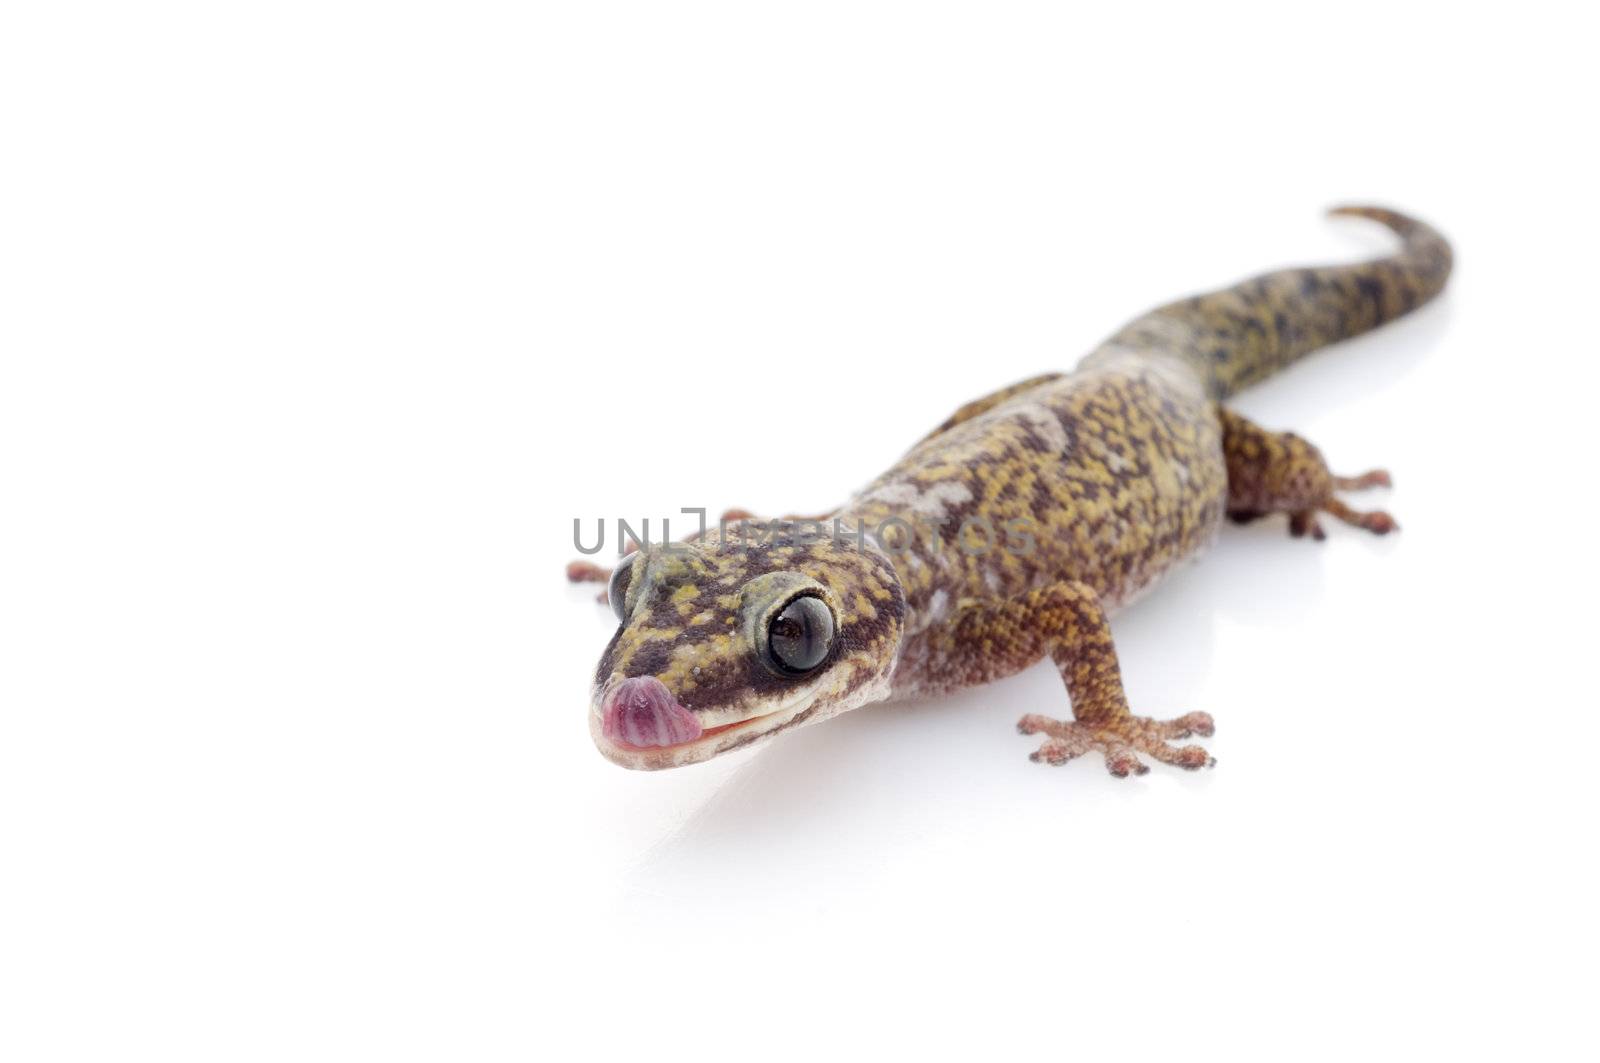 Oedura Monilis Gecko by Njean